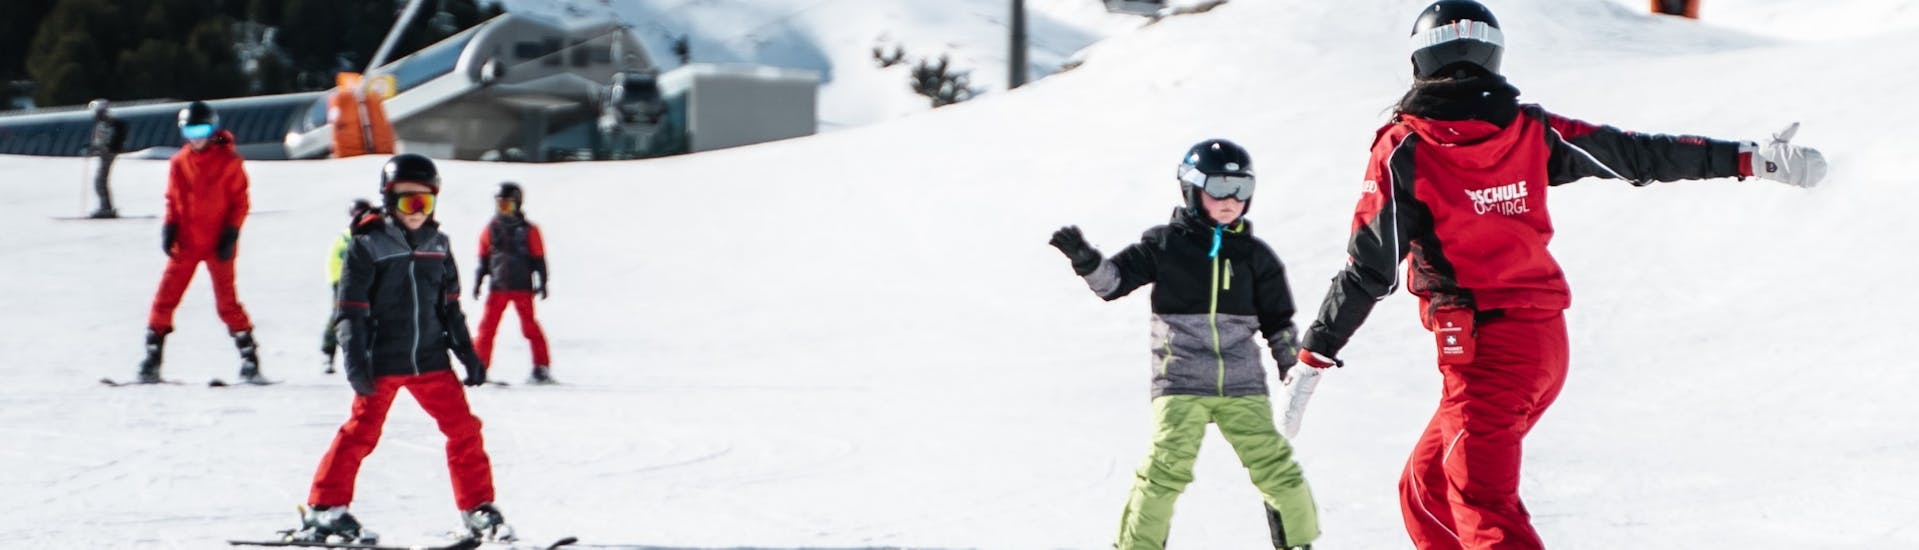 Skilessen voor kinderen voor gevorderden (4-16 jaar).